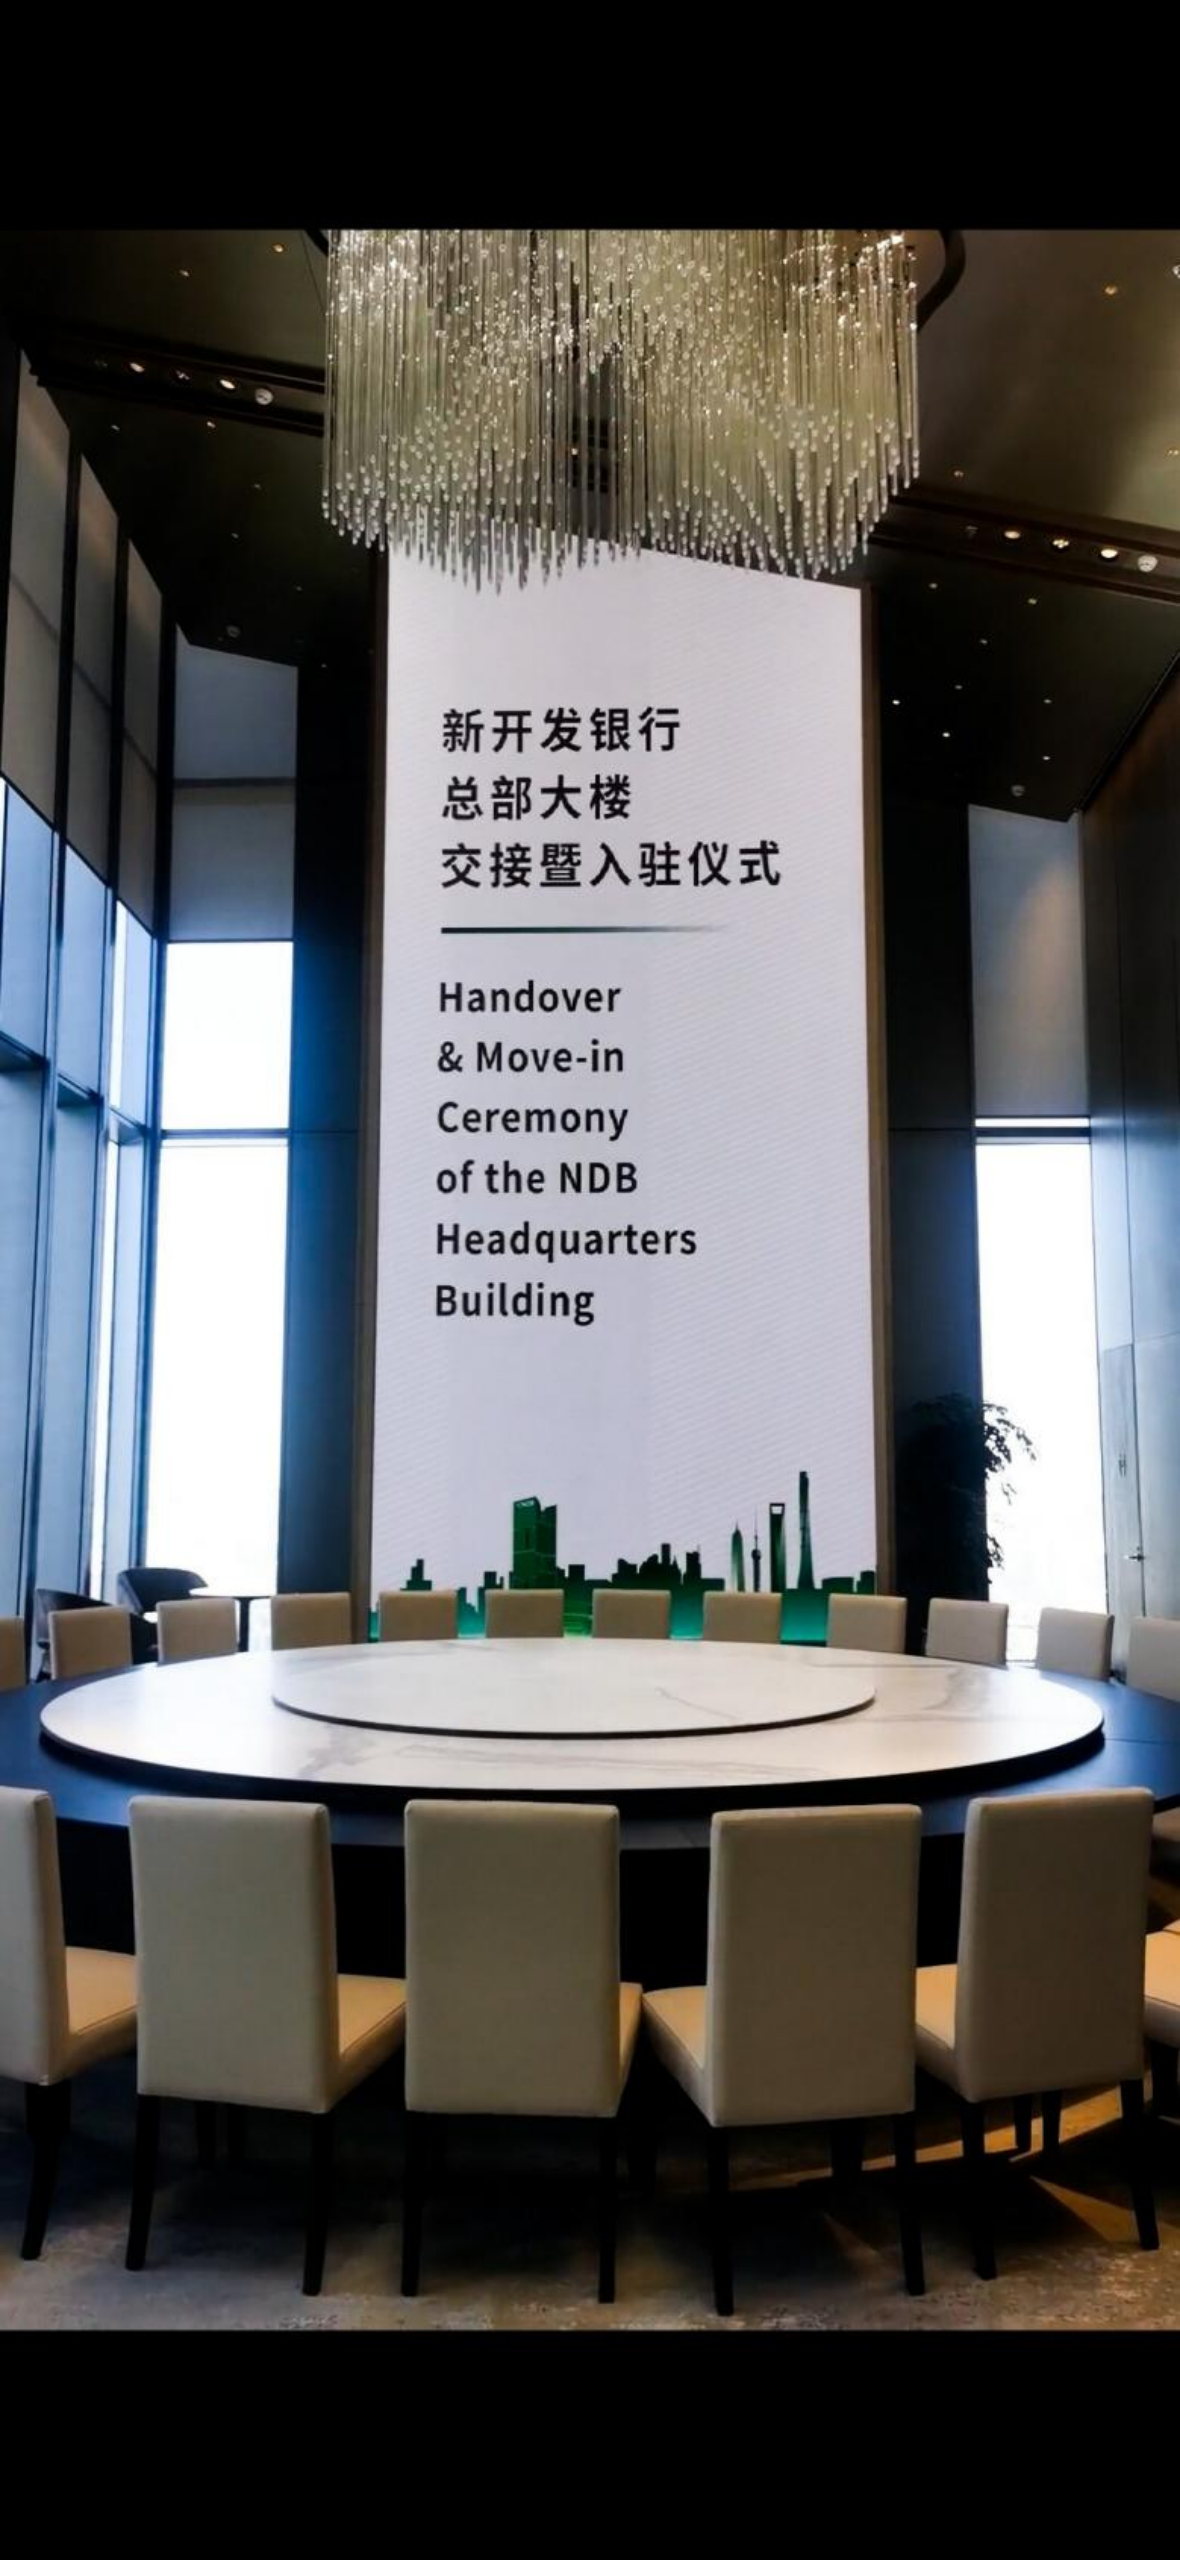 上海三思助力金砖国家新开发银行总部打造国际化空间